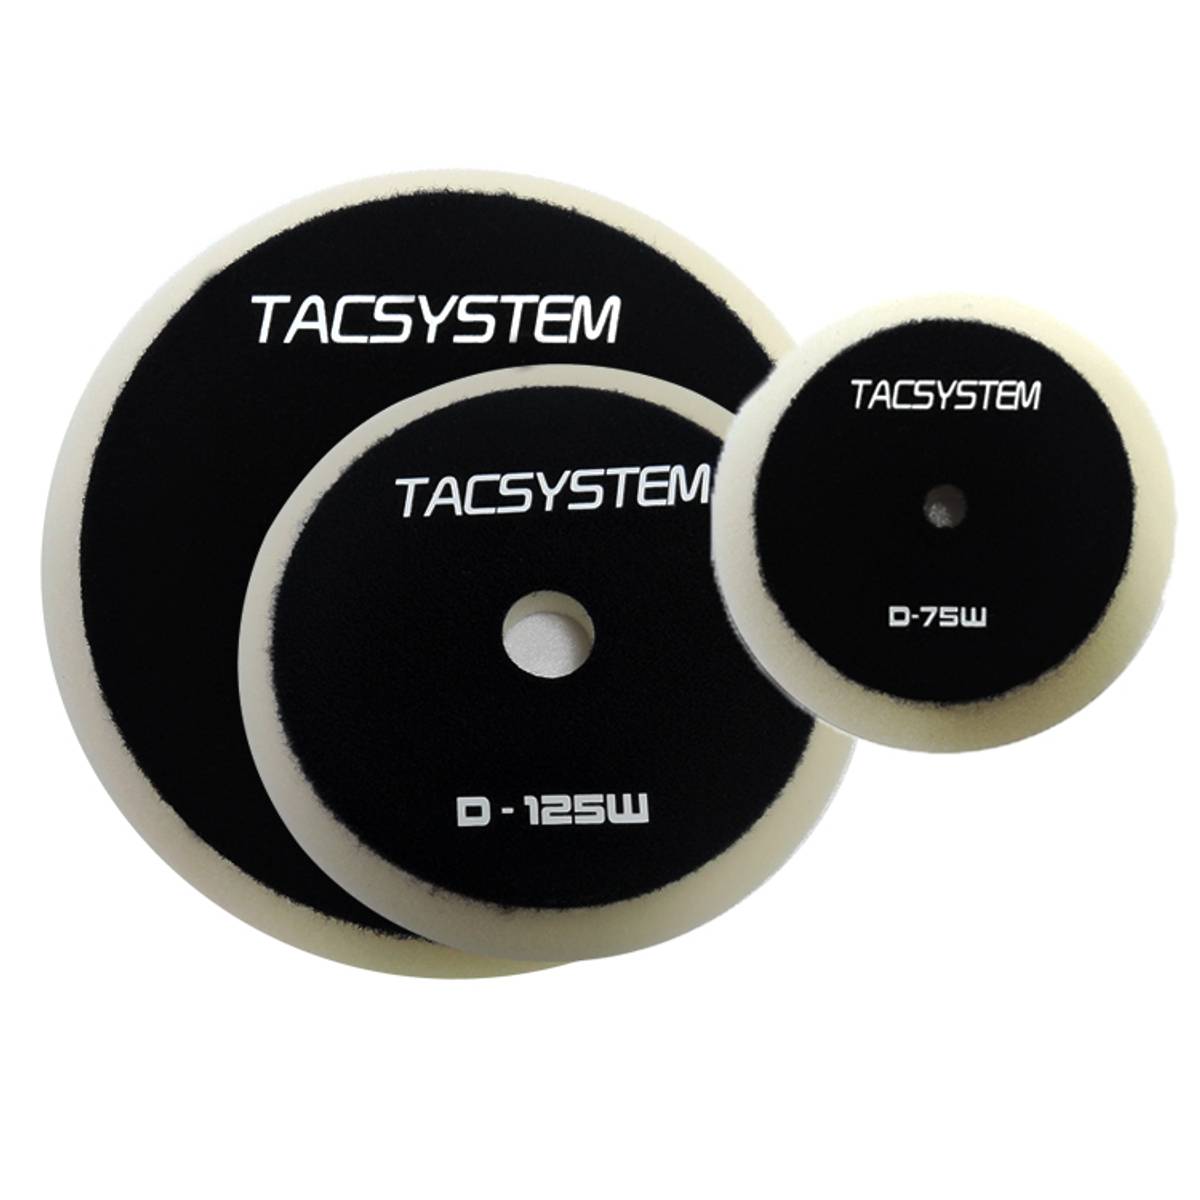 Tacsystem poleringspute HARD/COARSE 5” - Garasjekos.no